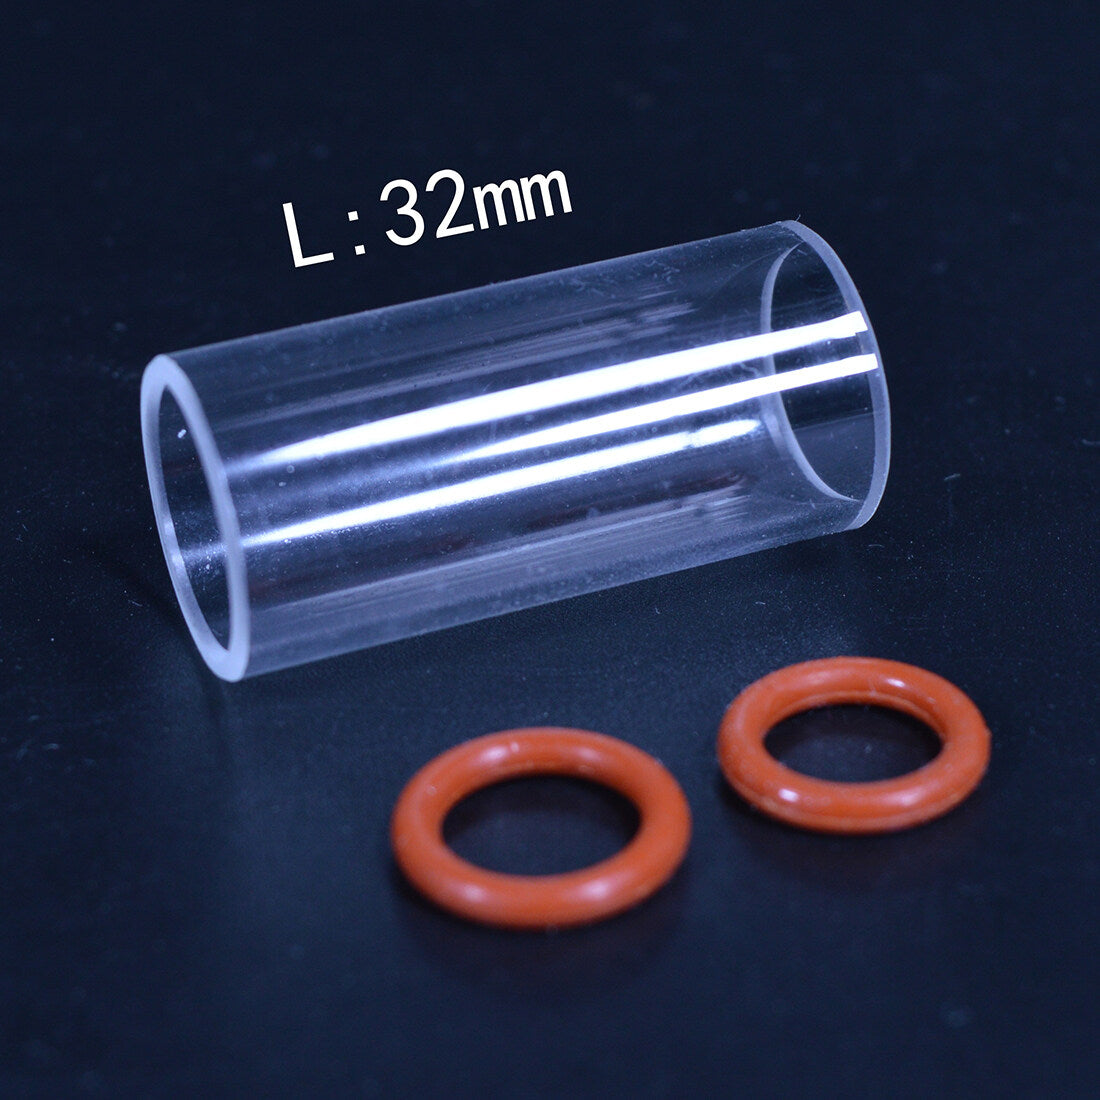 Glasluftzylinderschutz und O-Dichtungsringe geeignet für vertikale Dampfmaschinenmodelle mit sphärischem Kesselbausatz 3